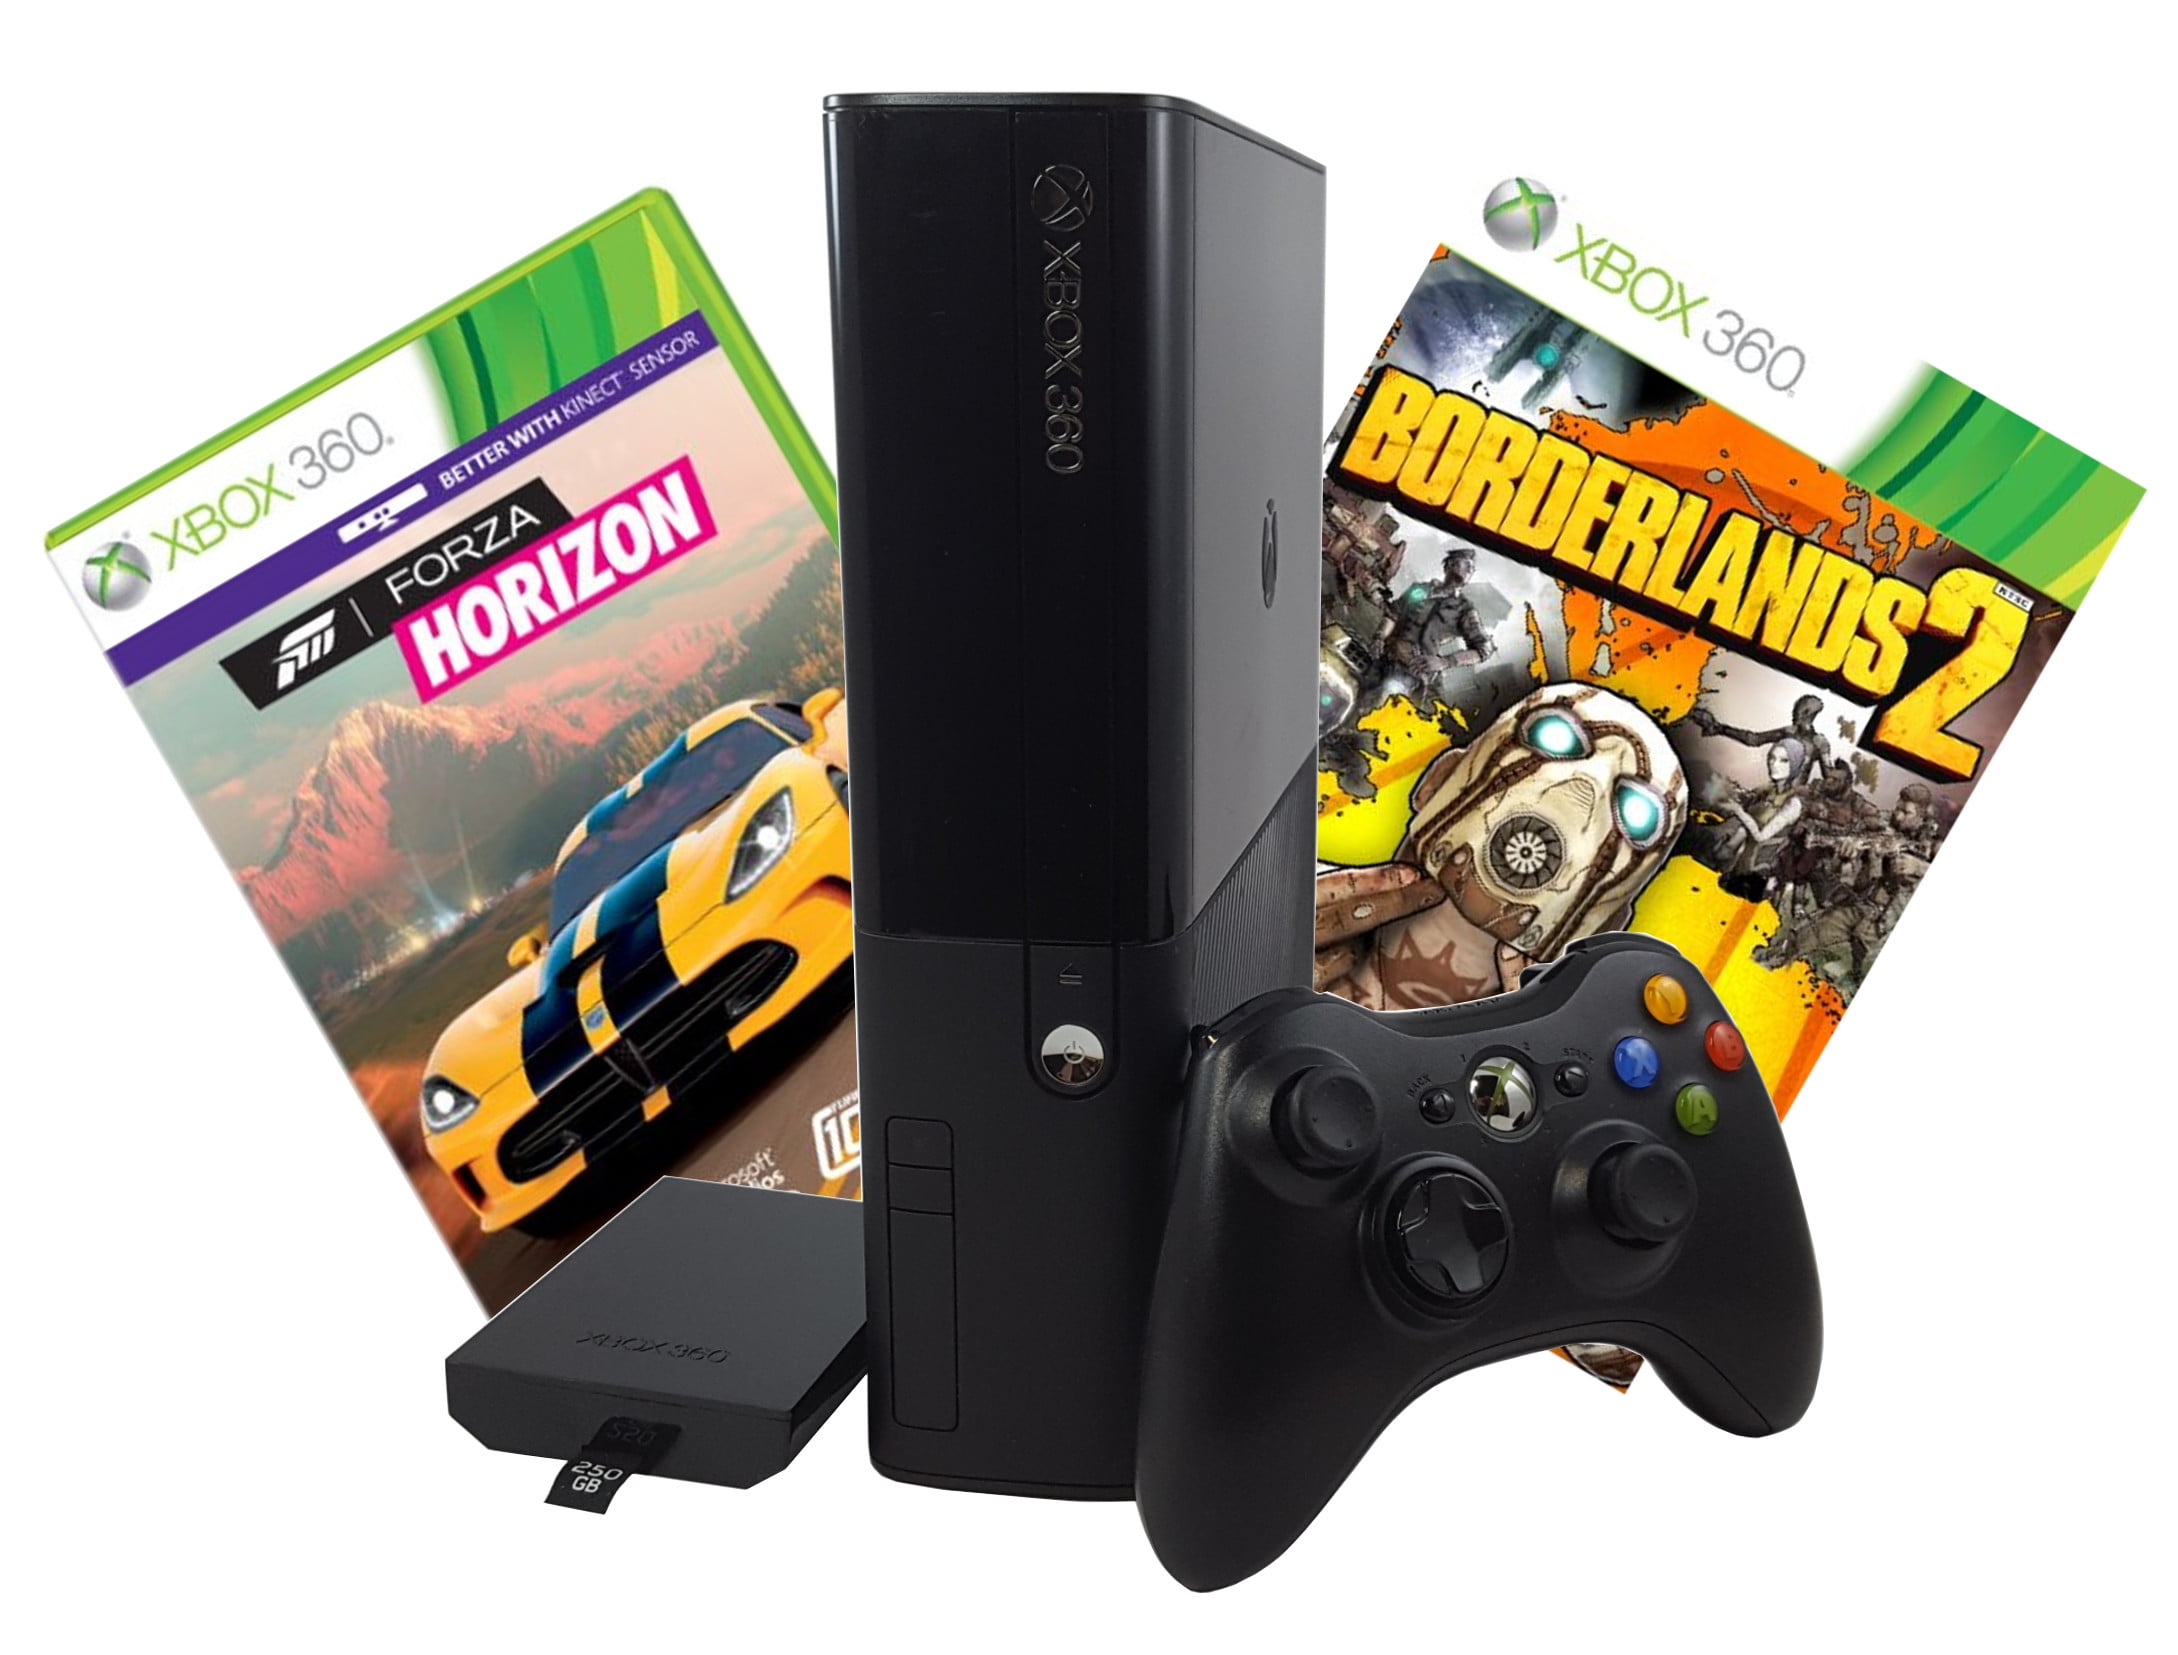 Forza Horizon 2 - Xbox 360 – Retro Raven Games